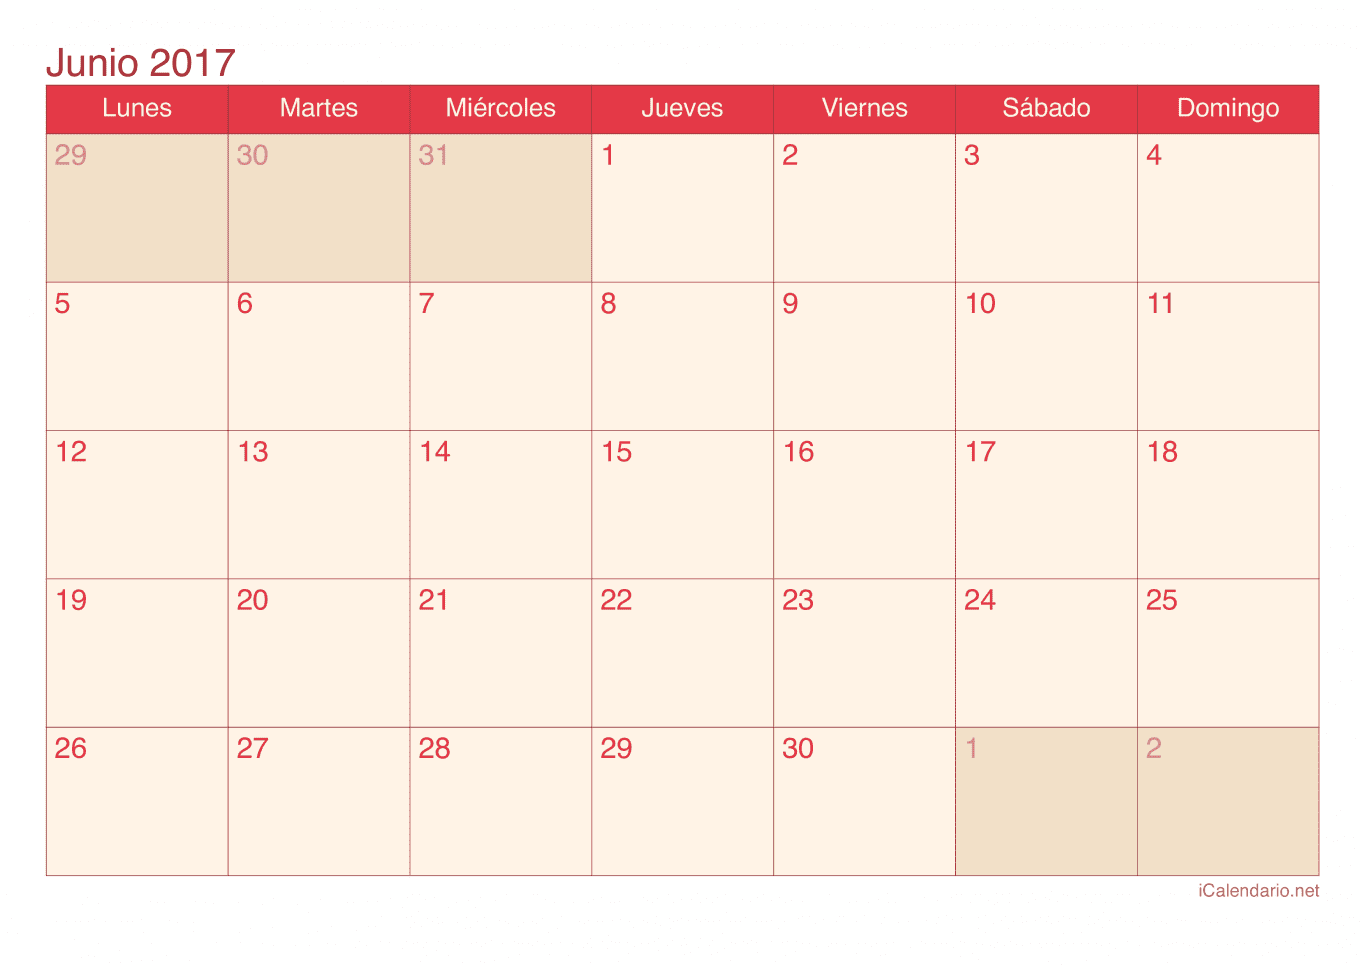 Calendario de junio 2017 - Cherry